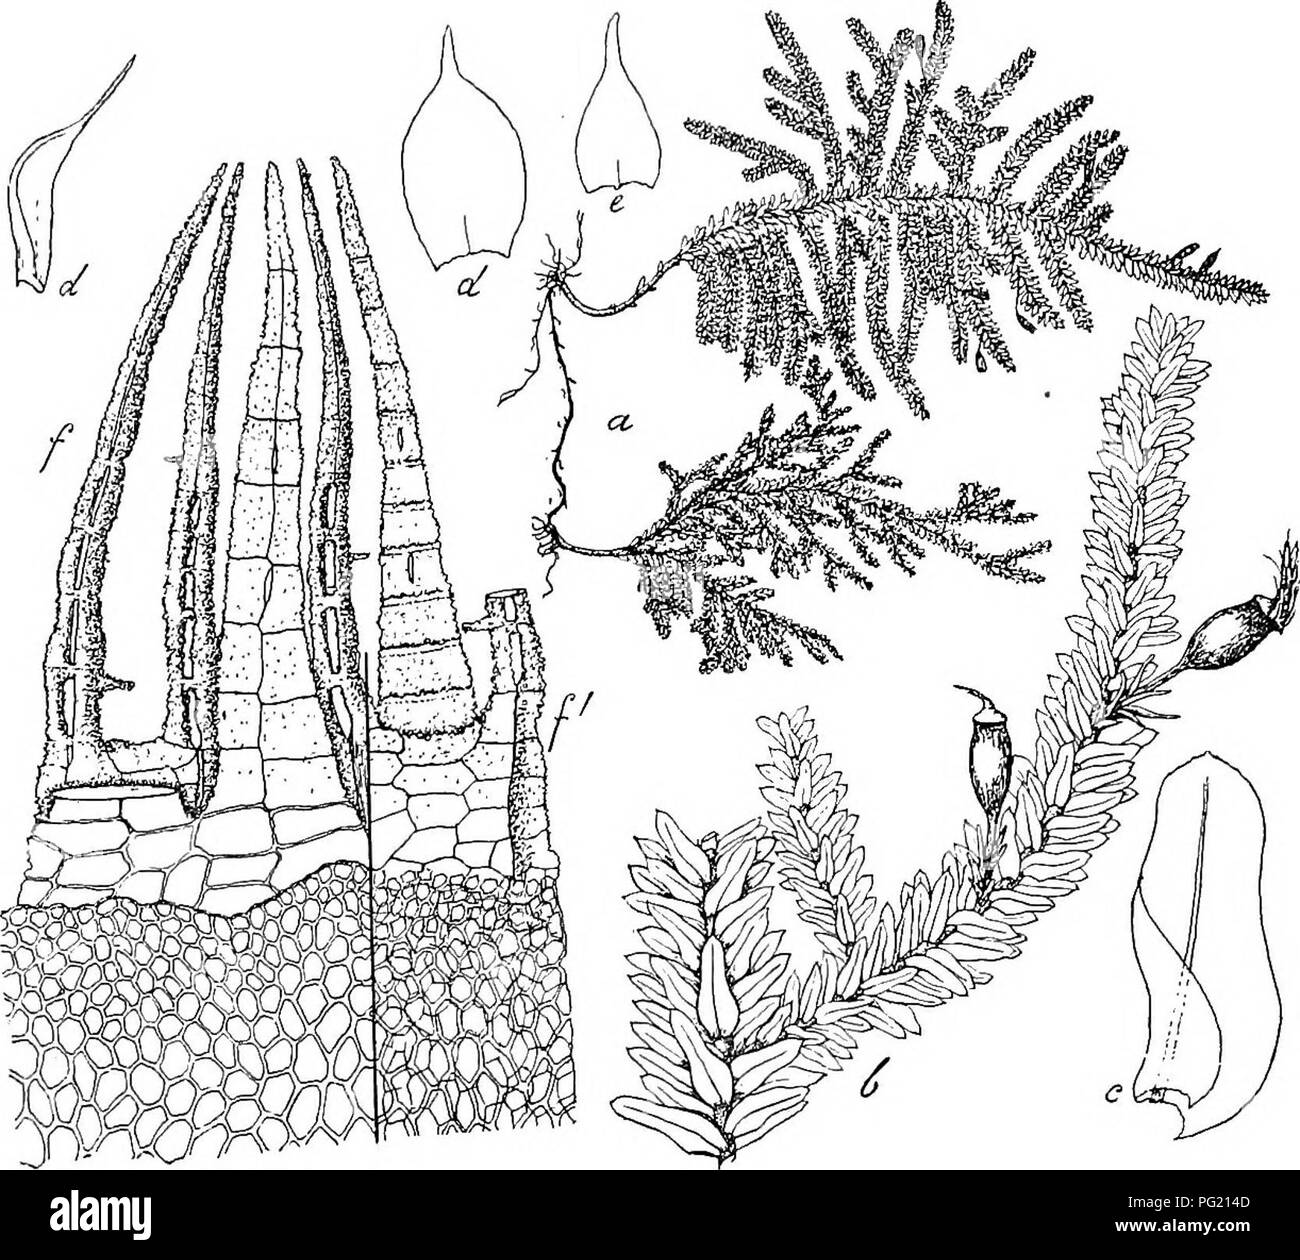 . Flore de Buitenzorg. Botany. 891 an der Mtindung mehrere Reihen kleiner. Am Grunde zerstreut mit kleinen (20 f^.), phaneroporen SpaltOffnungen, die von Ring- zellen umgeben sind; Columella saulchenformig. Ring nicht aus- Fic;. 156.. Ilimaniocladium Plumula (Nefs.) Flscii. a. Habitasbild (natiii'l. Grosse). e. Niederblatt dcs primaien Stengels '/. b. Zweig mit Sporogonen '. f. Periston]. c. Stengelblatt '/• /- Ventral gesehea d. Nicderblatter des secundaven Stengels Y- 10 0 gebildet; Deckel aus niedriger Basis schief geschnabelt, fast von Urnenlange. Haube klein, kappenformig, einseitig gesch Stock Photo